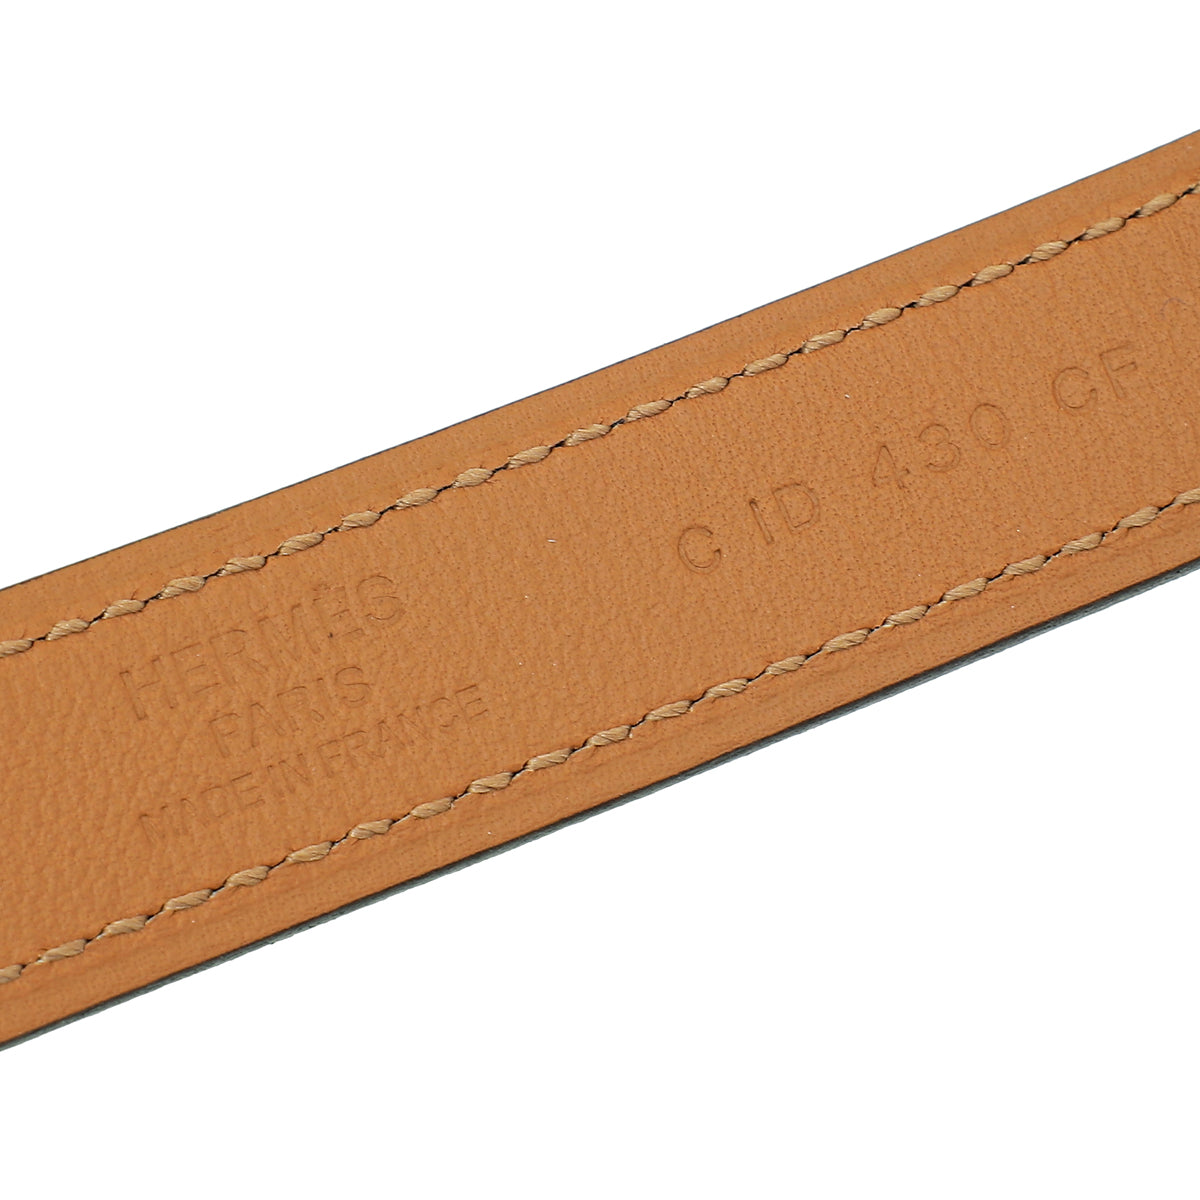 Hermes Bicolor Rival 18mm Belt